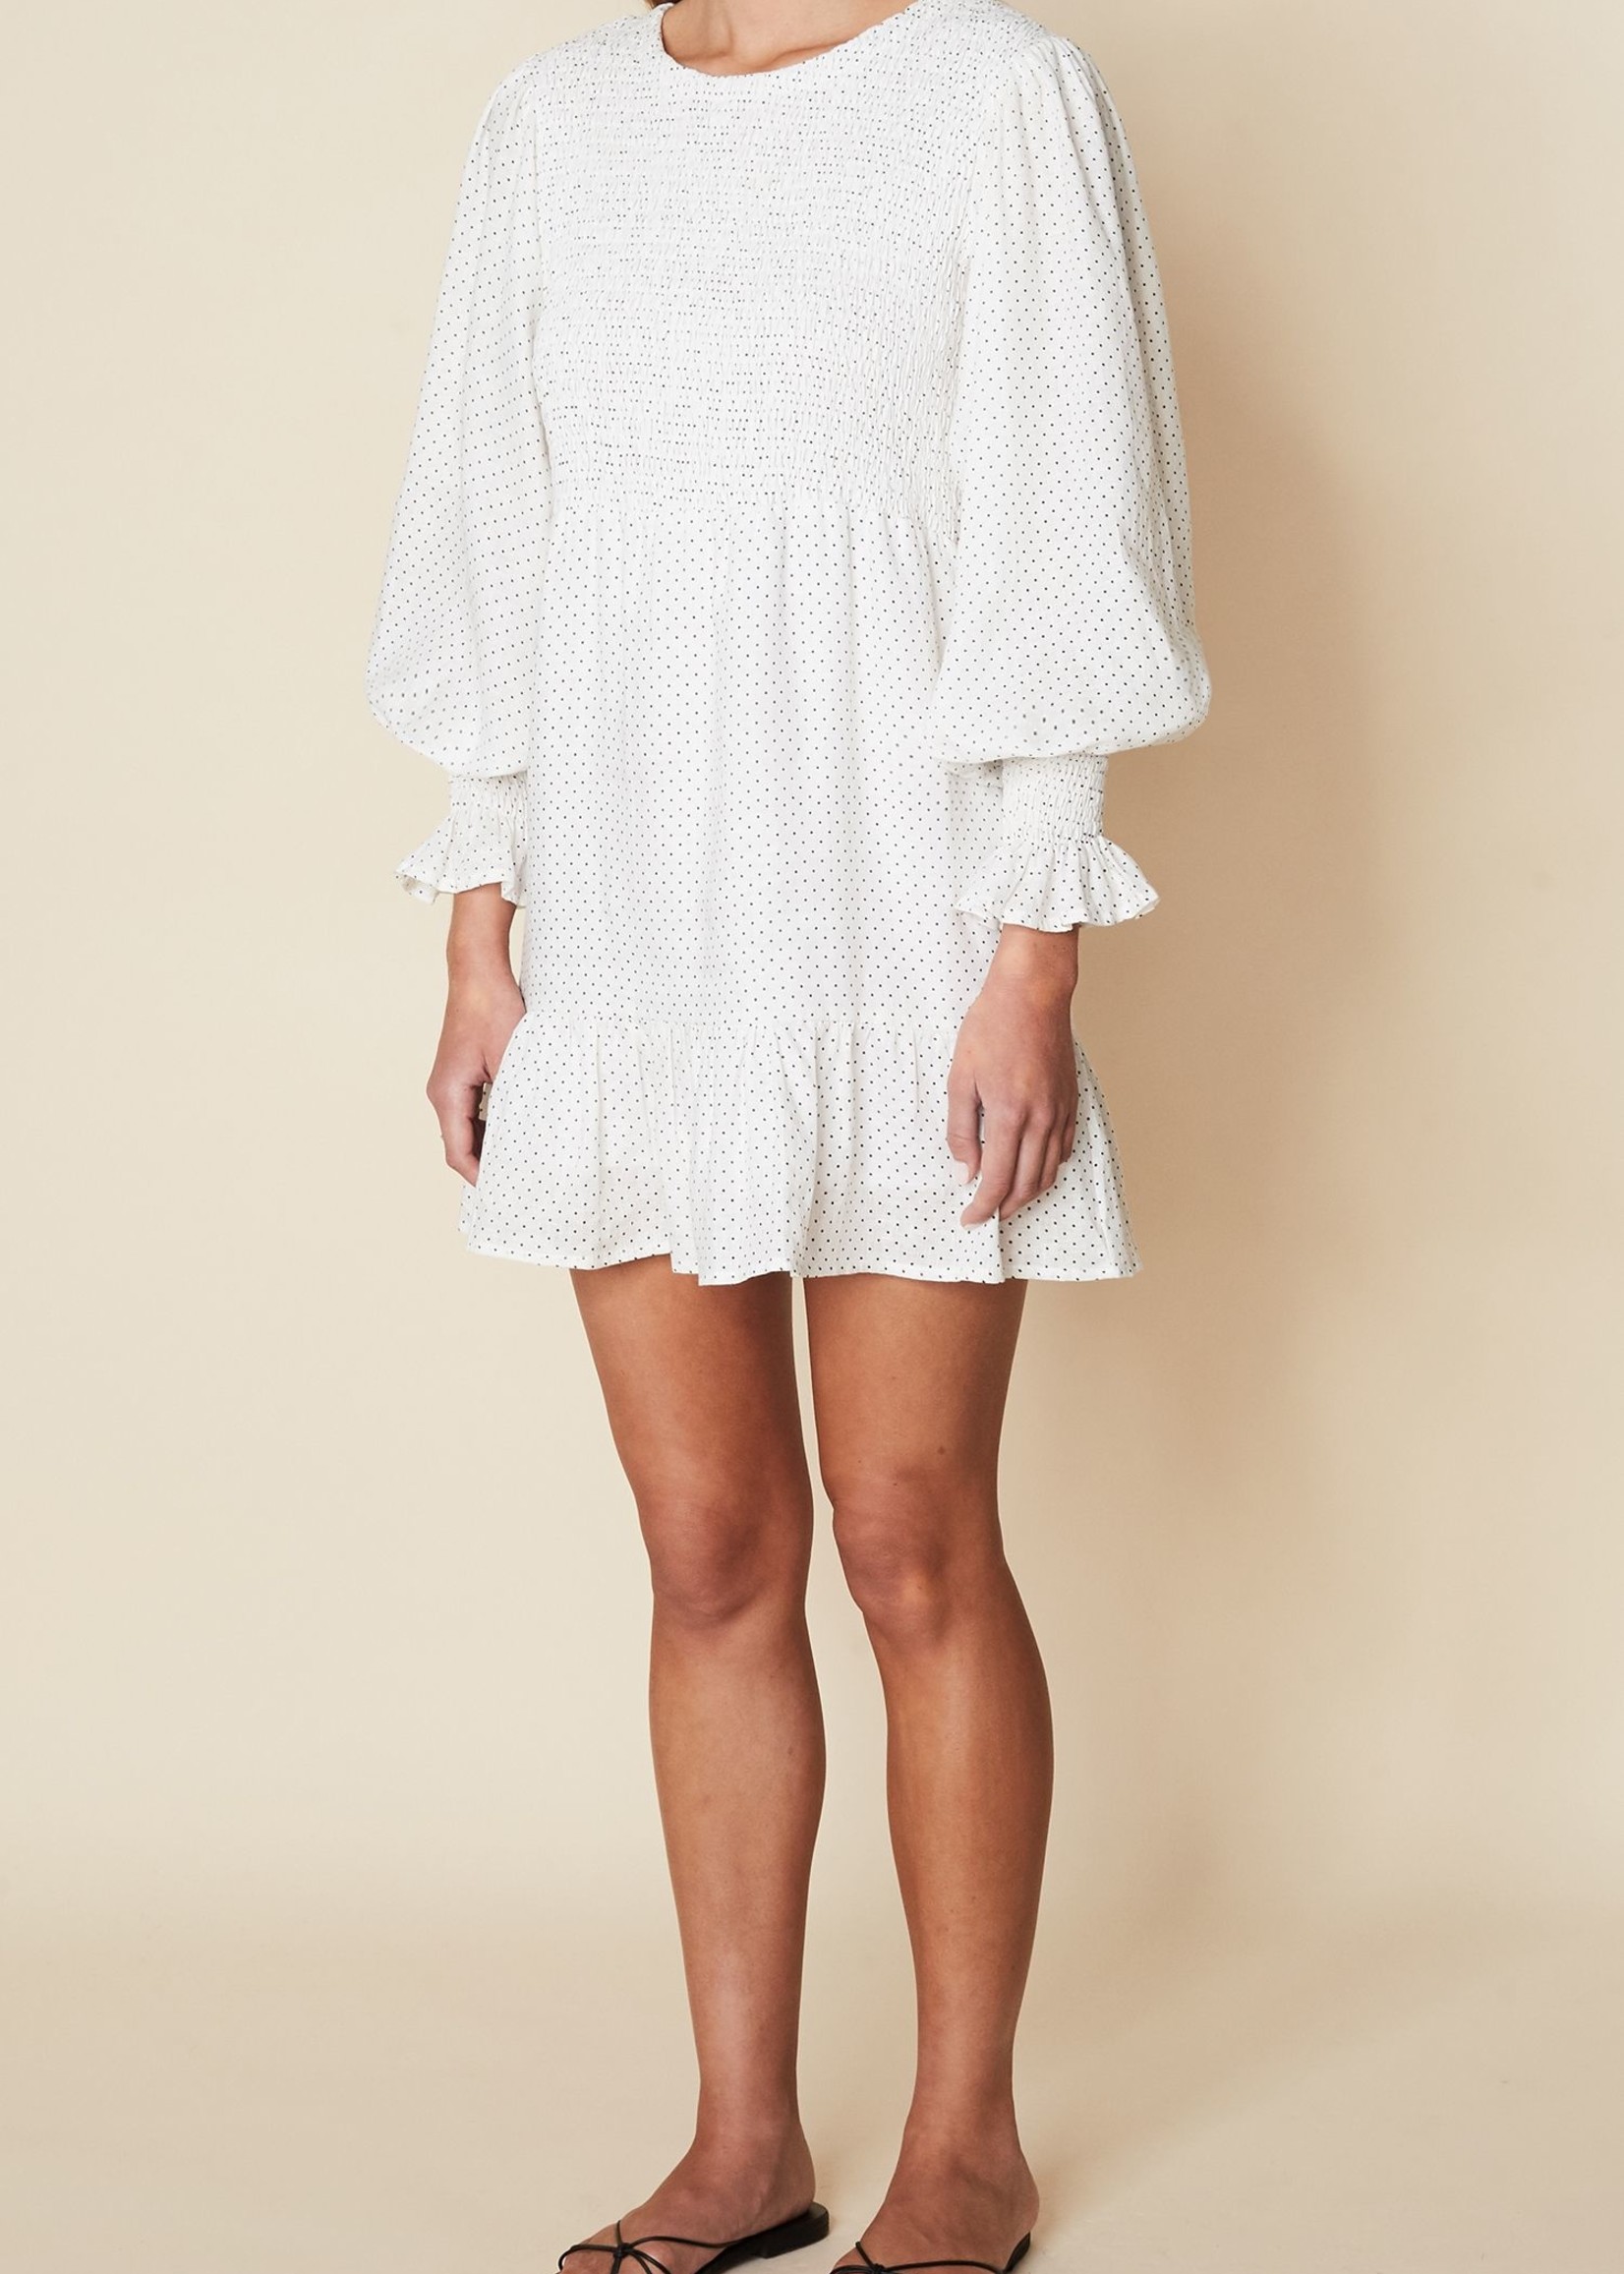 FAITHFULL Rosie Mini Dress- Soft Dot White -